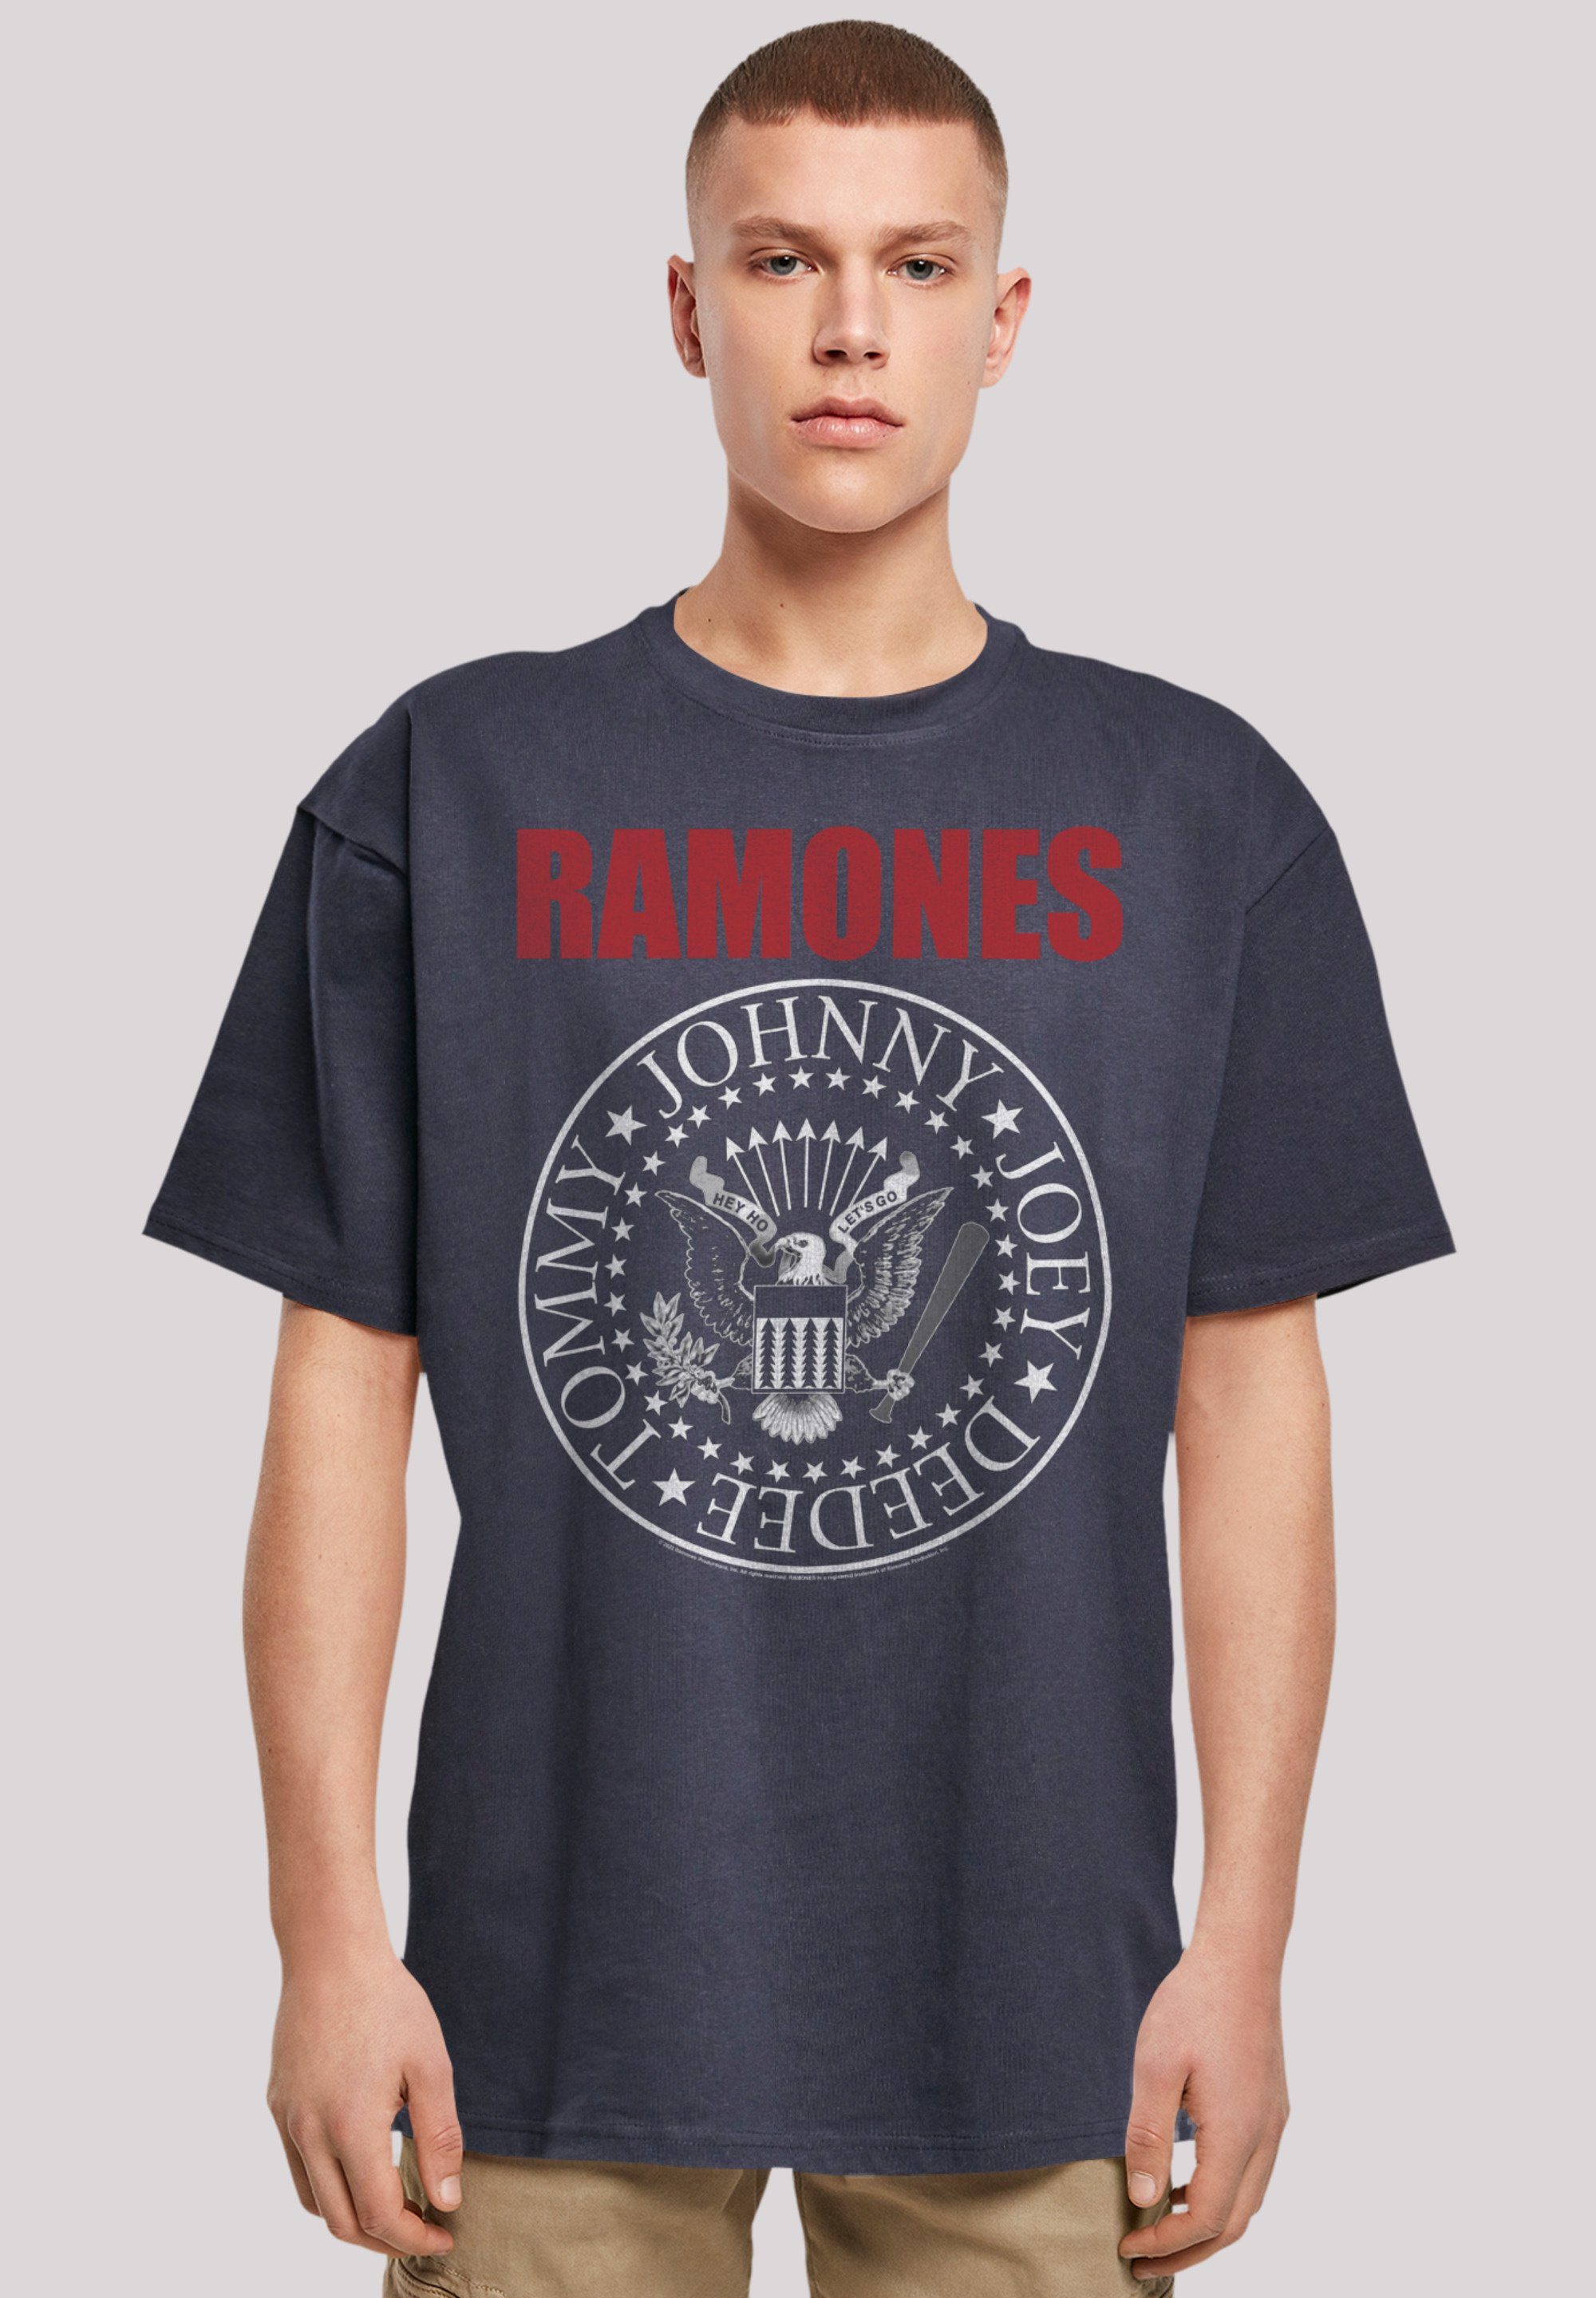 F4NT4STIC T-Shirt Ramones Weite Musik Text Red Schultern Rock-Musik, und Qualität, Passform Band Rock Premium überschnittene Band, Seal